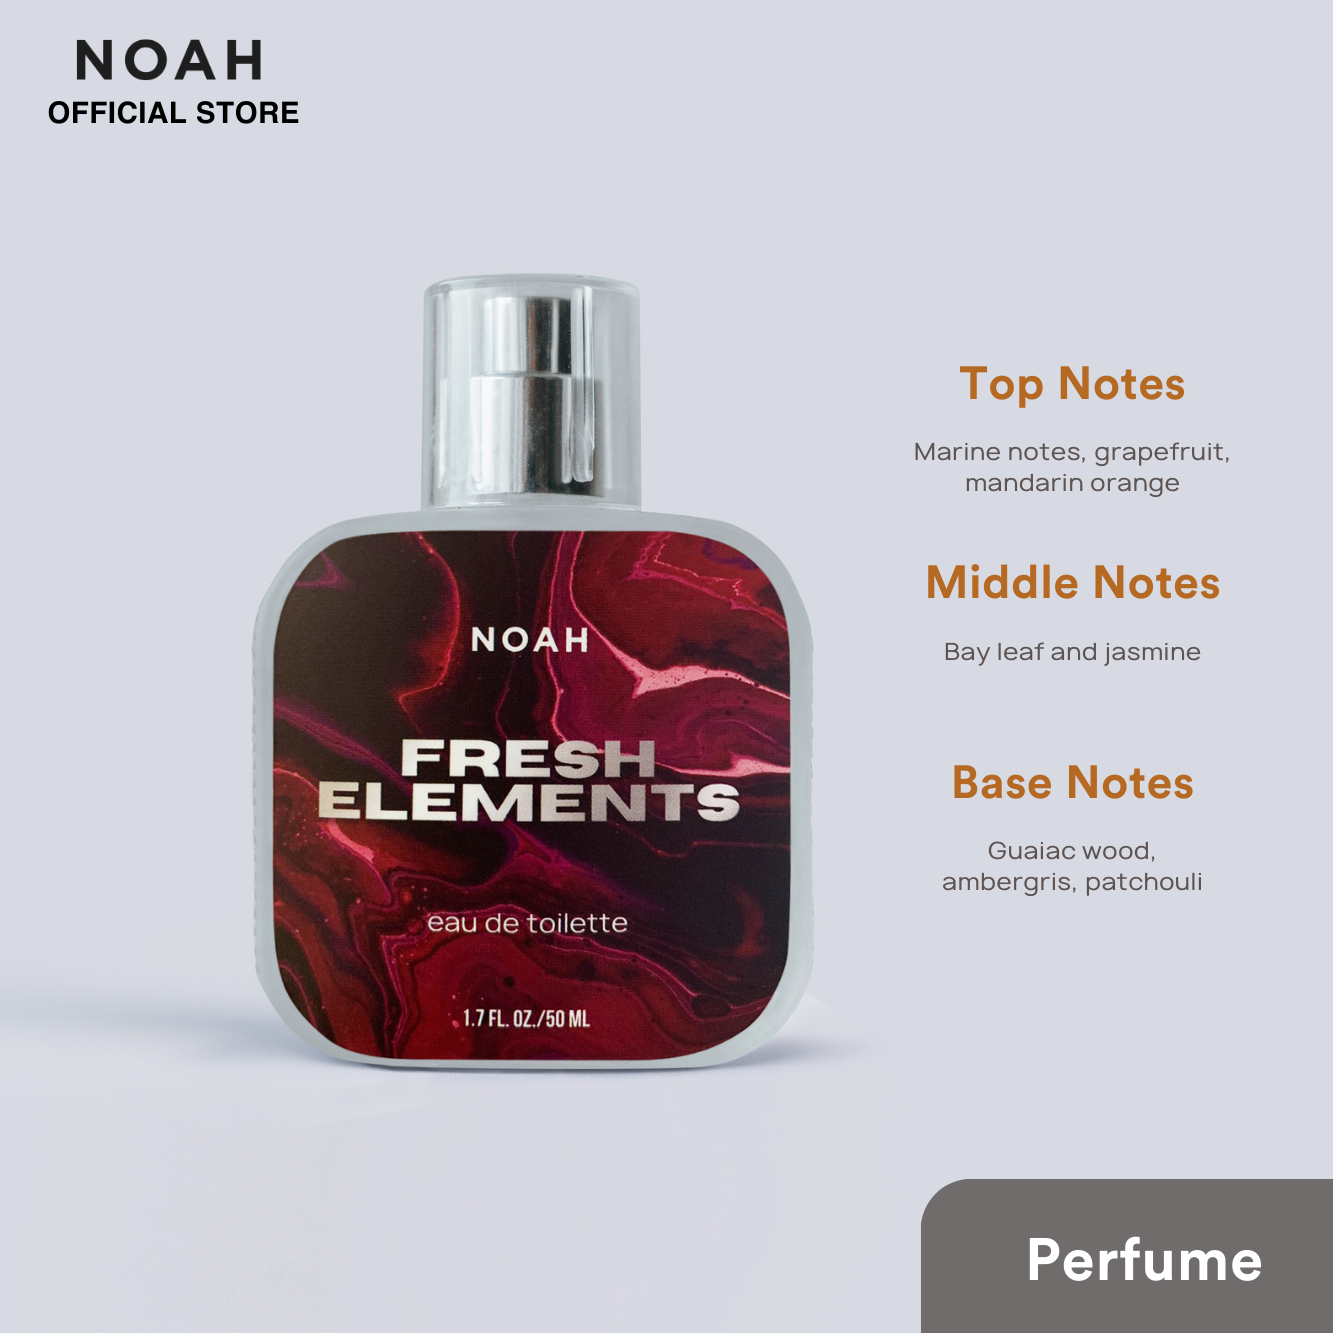 Noah Fresh Elements  Eau De Toilette 50ml (Lasts up to 4-6 hours)